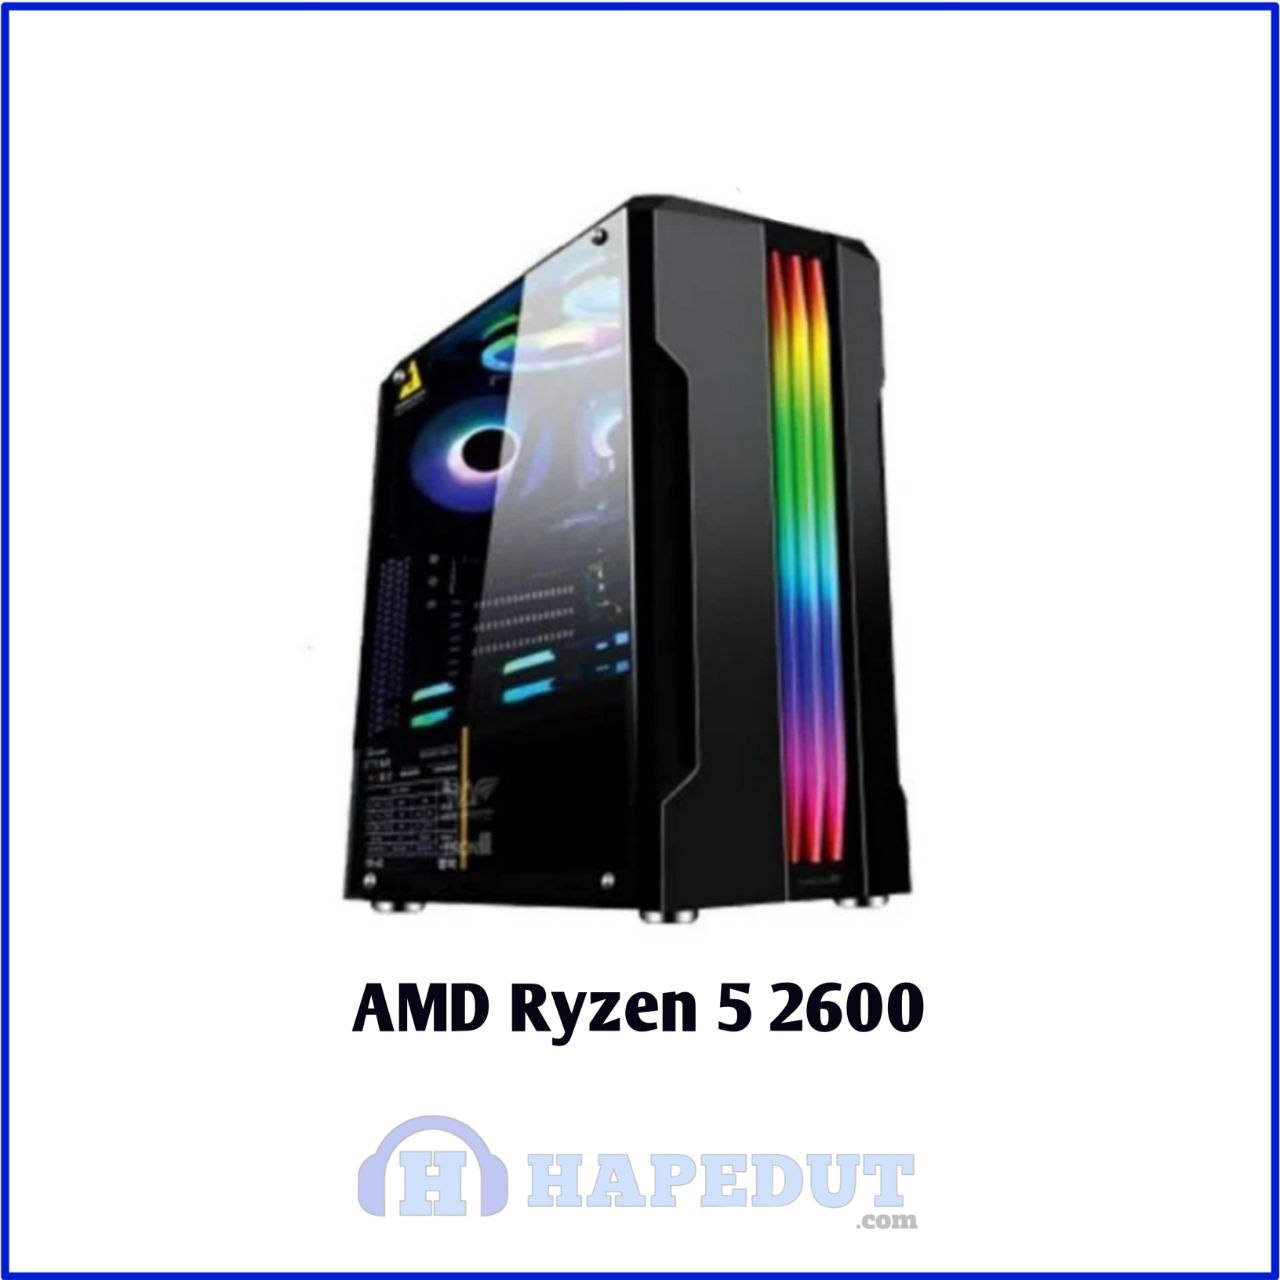 AMD Ryzen 5 2600 : Hapedut